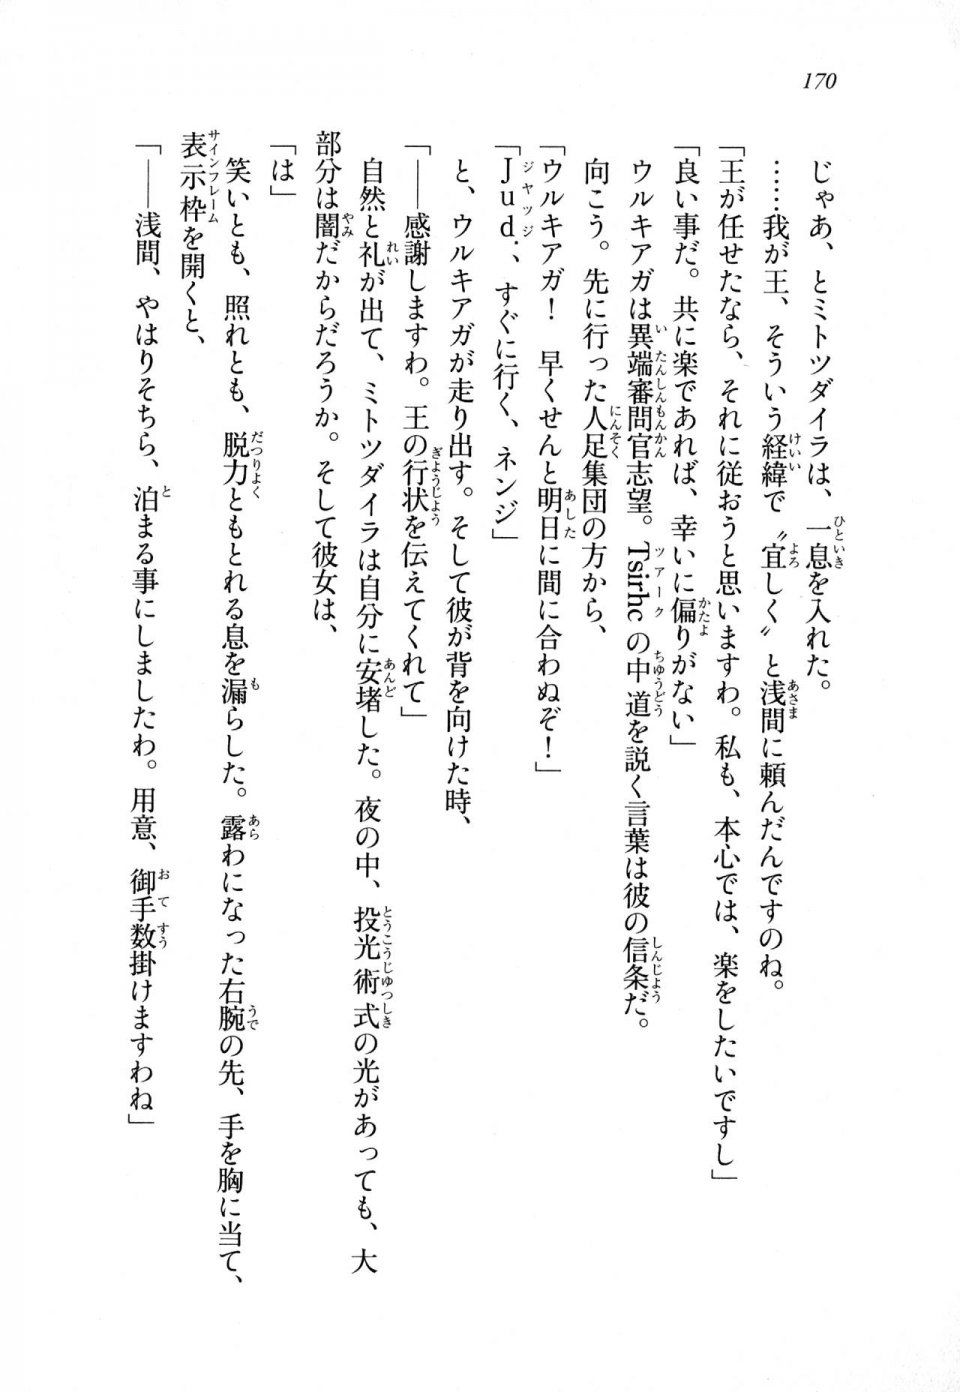 Kyoukai Senjou no Horizon LN Sidestory Vol 1 - Photo #168